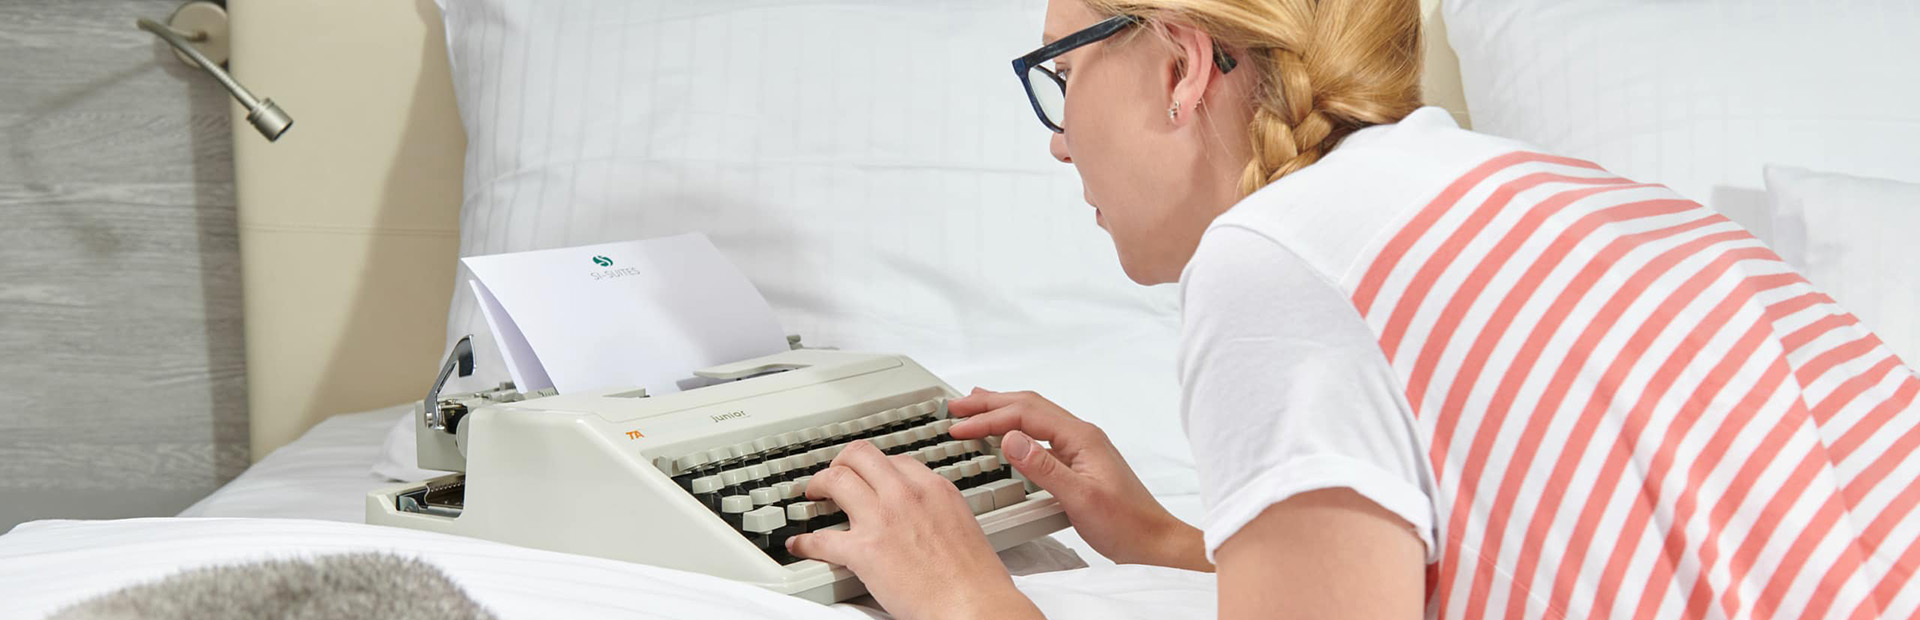 Frau mit Schreibmaschine im Bett